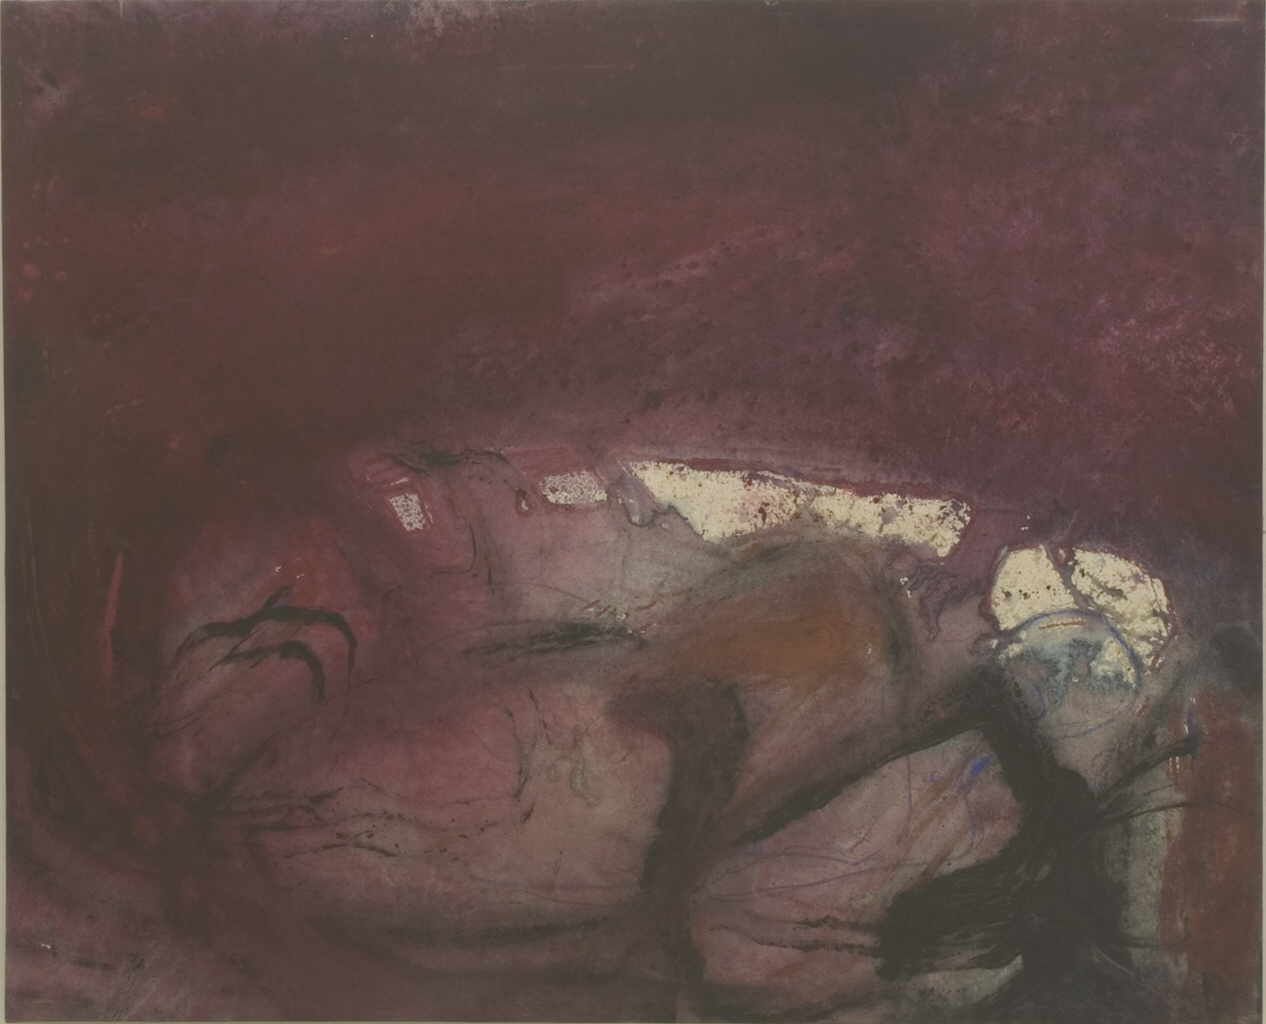 Hohenberger Udo 
"Emprional", 2002
tÃ©cnica mixta / tela
108 x 132 cm